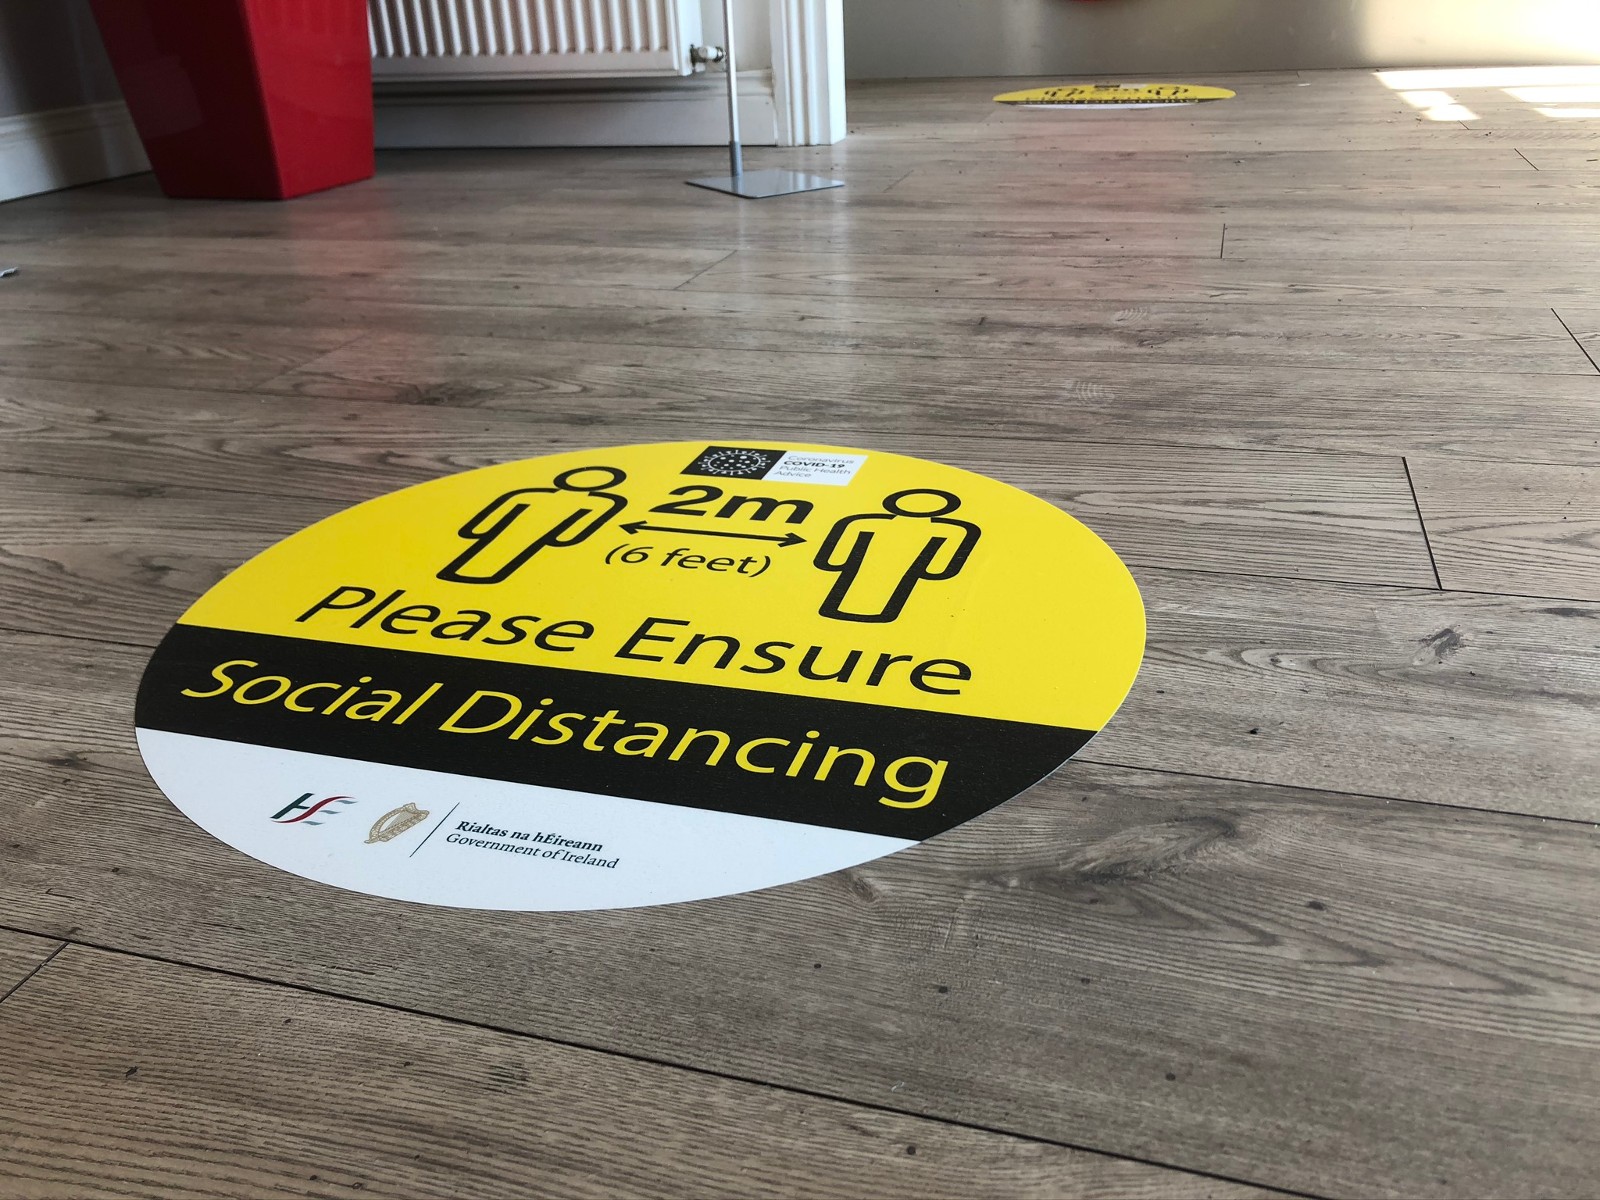 social distancing floor stickers